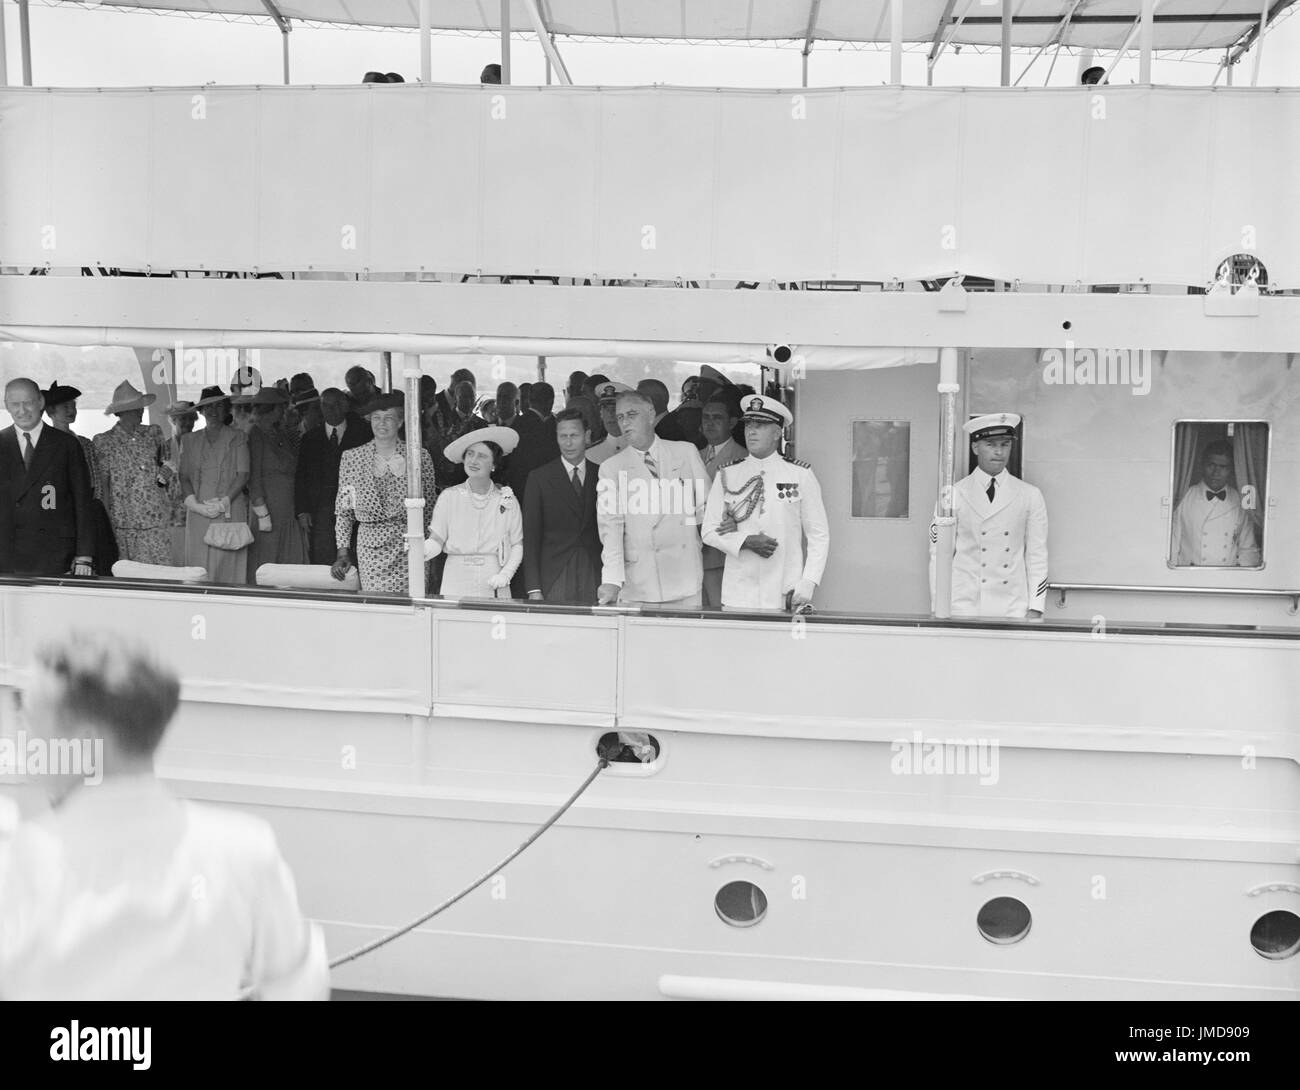 First Lady Eleanor Roosevelt, Königin Elizabeth und König George von Großbritannien und US-Präsident Franklin d. Roosevelt an Bord Schiff, Washington DC, USA, Harris & Ewing, Juni 1939 Stockfoto